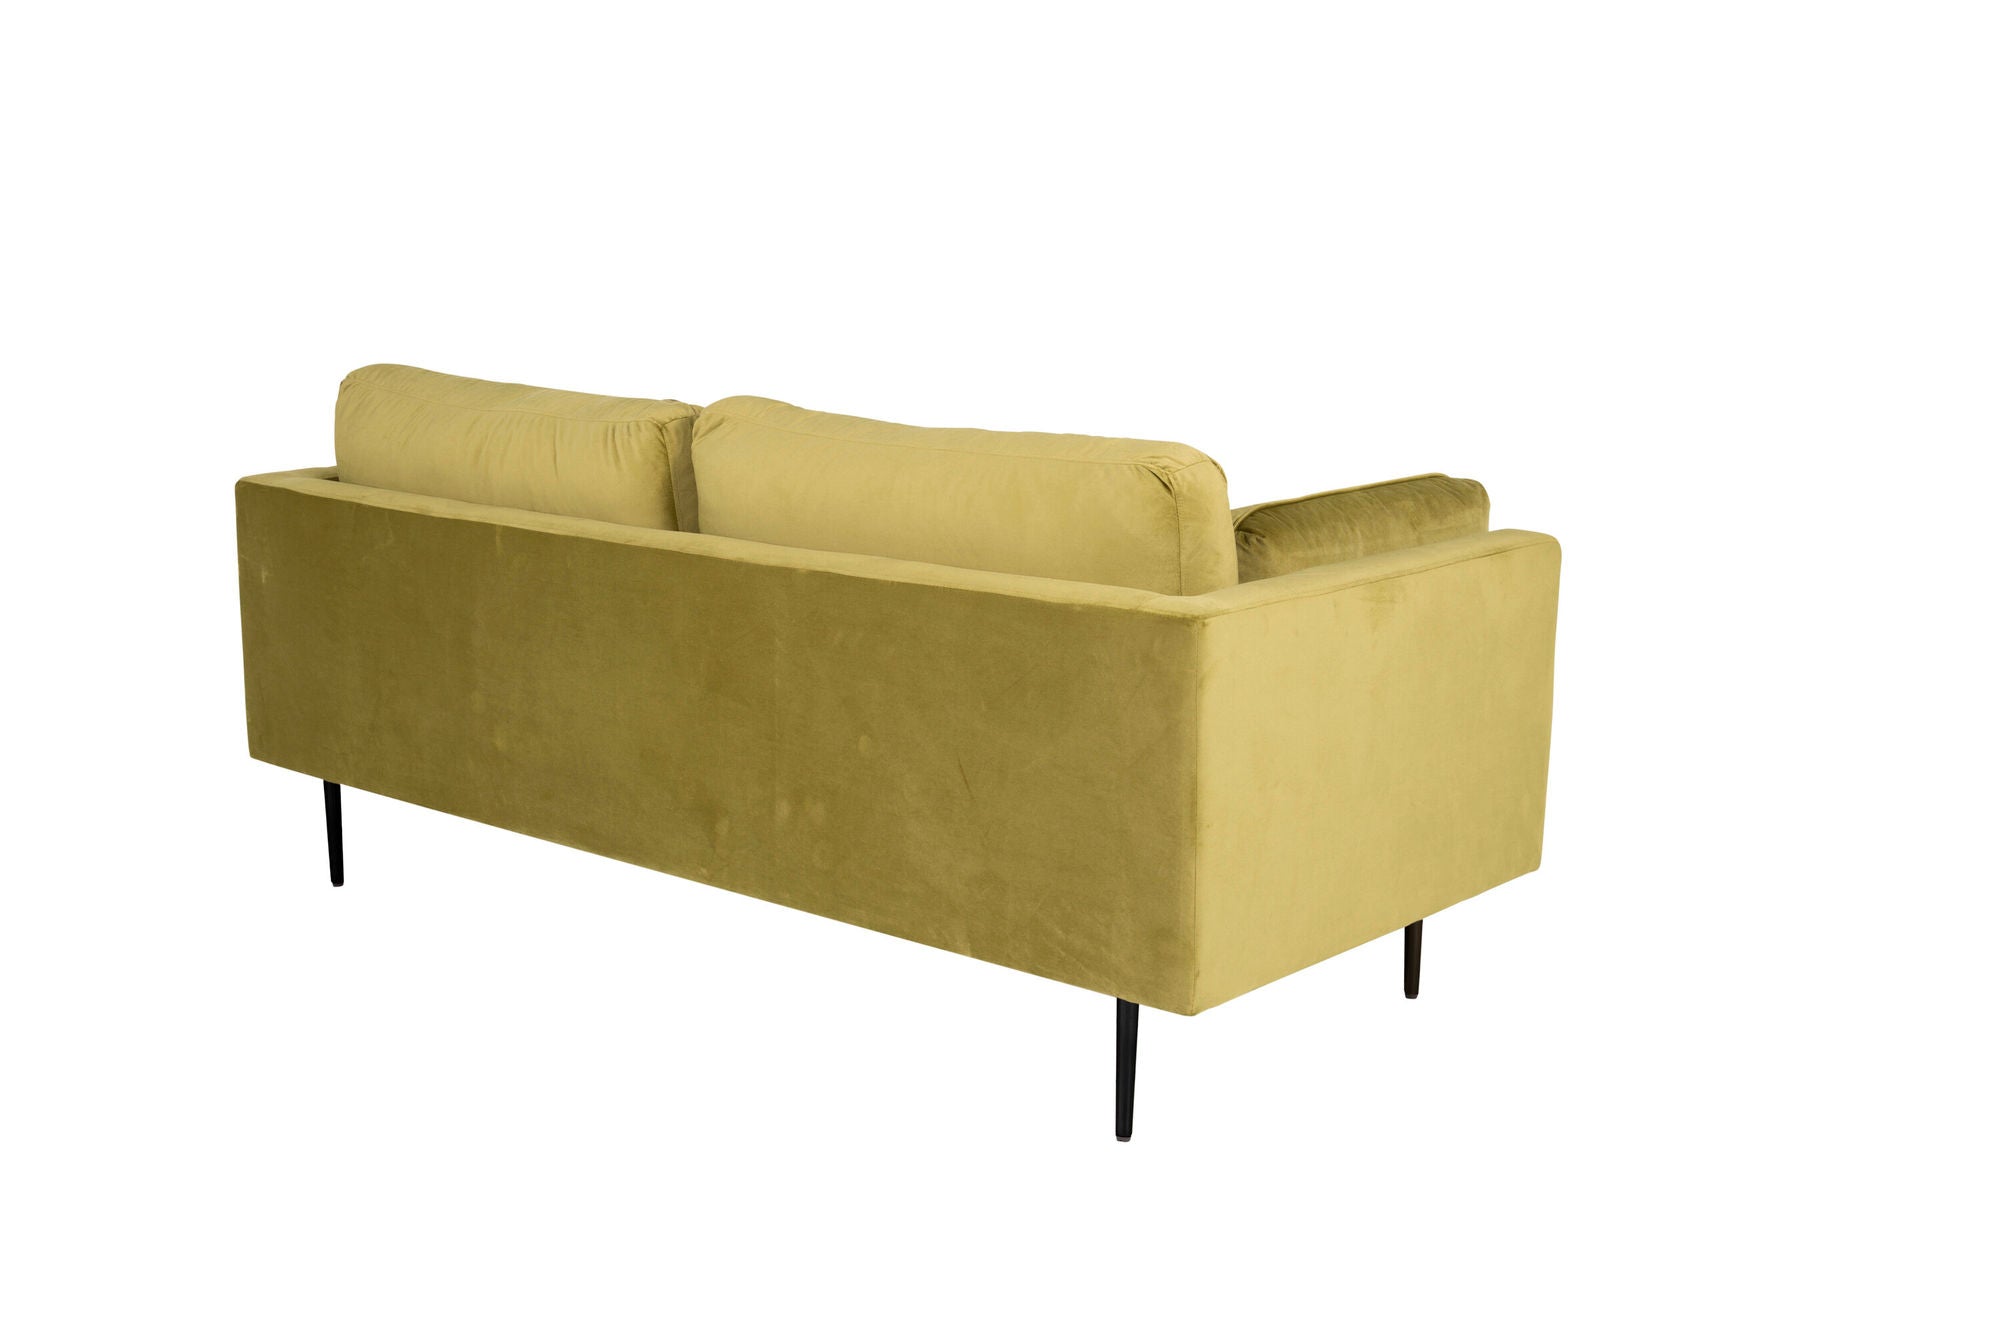 Venture Home Boom - 3 seat sofa Velvet - Spring Green+Black Legs for Boom Sofa - FULL SET_1 - vivahabitat.com